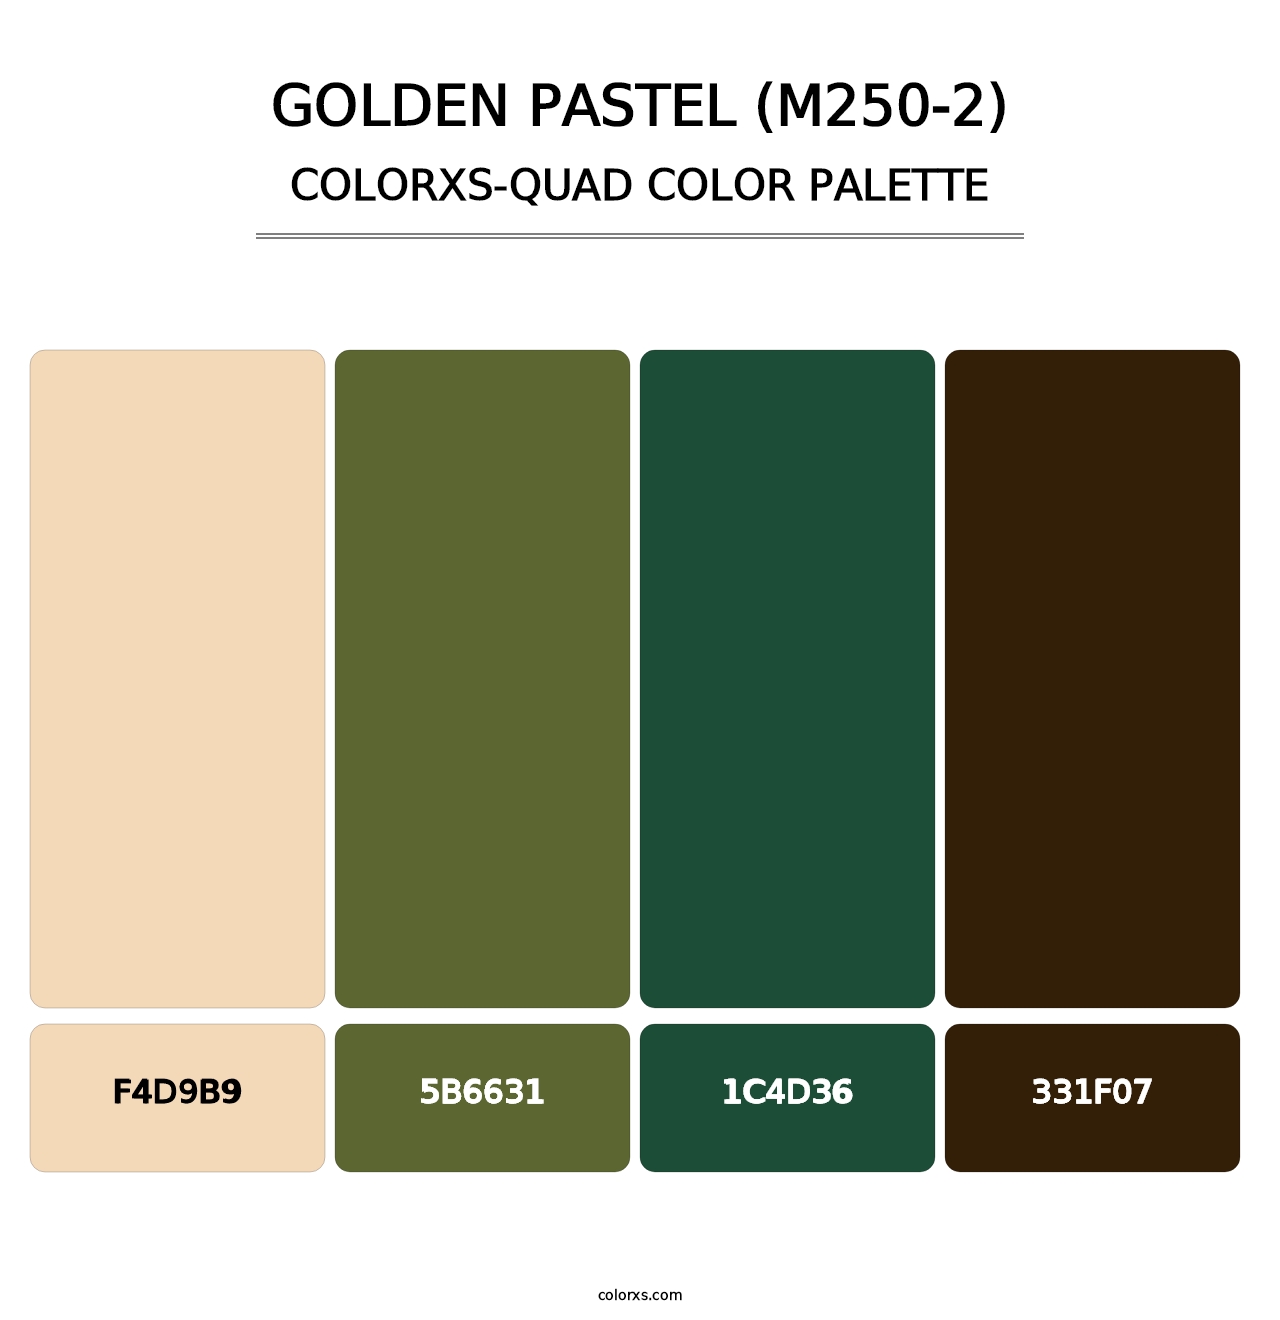 Golden Pastel (M250-2) - Colorxs Quad Palette